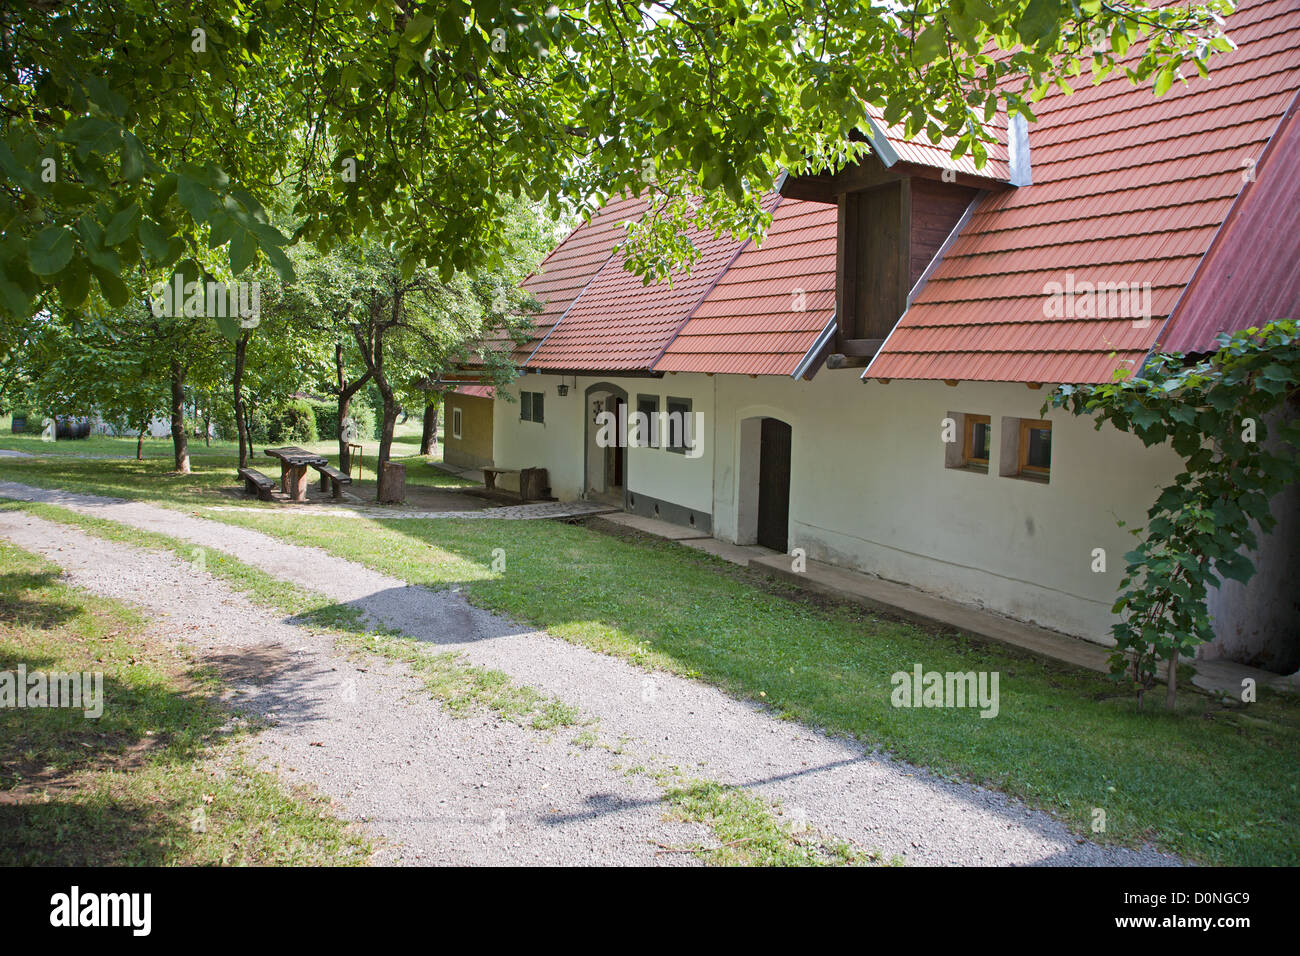 Alte Rebe-Keller aus der mittleren Slowakei - Ortschaft Stara Hora rekonstruiert Stockfoto